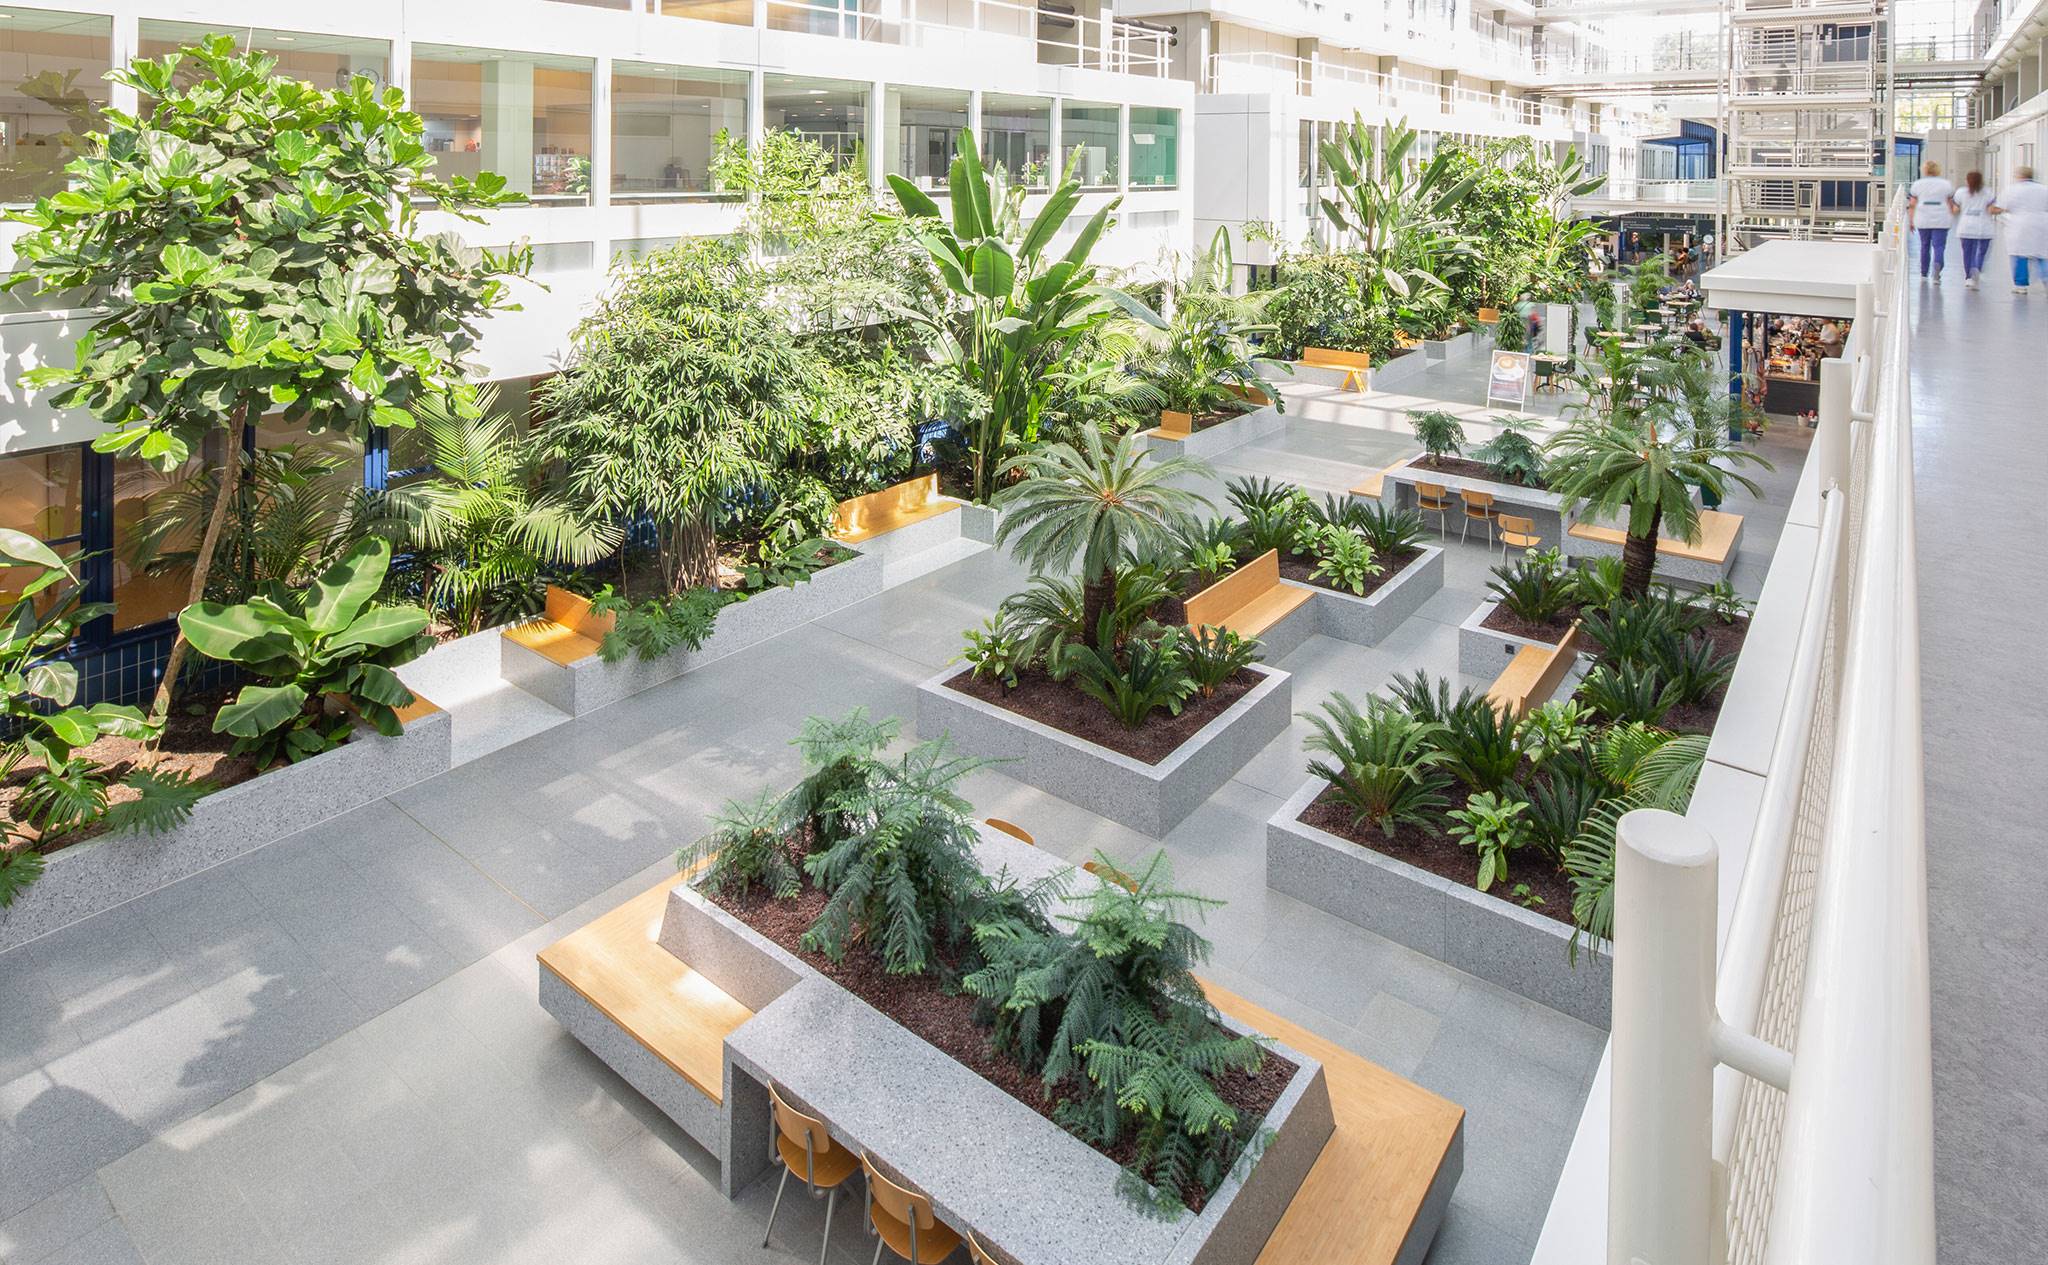 Dijklander Ziekenhuis, Purmerend - Wij onderhouden de binnenbeplanting van dit ziekenhuis om de planten zo vitaal en gezond mogelijk te houden.